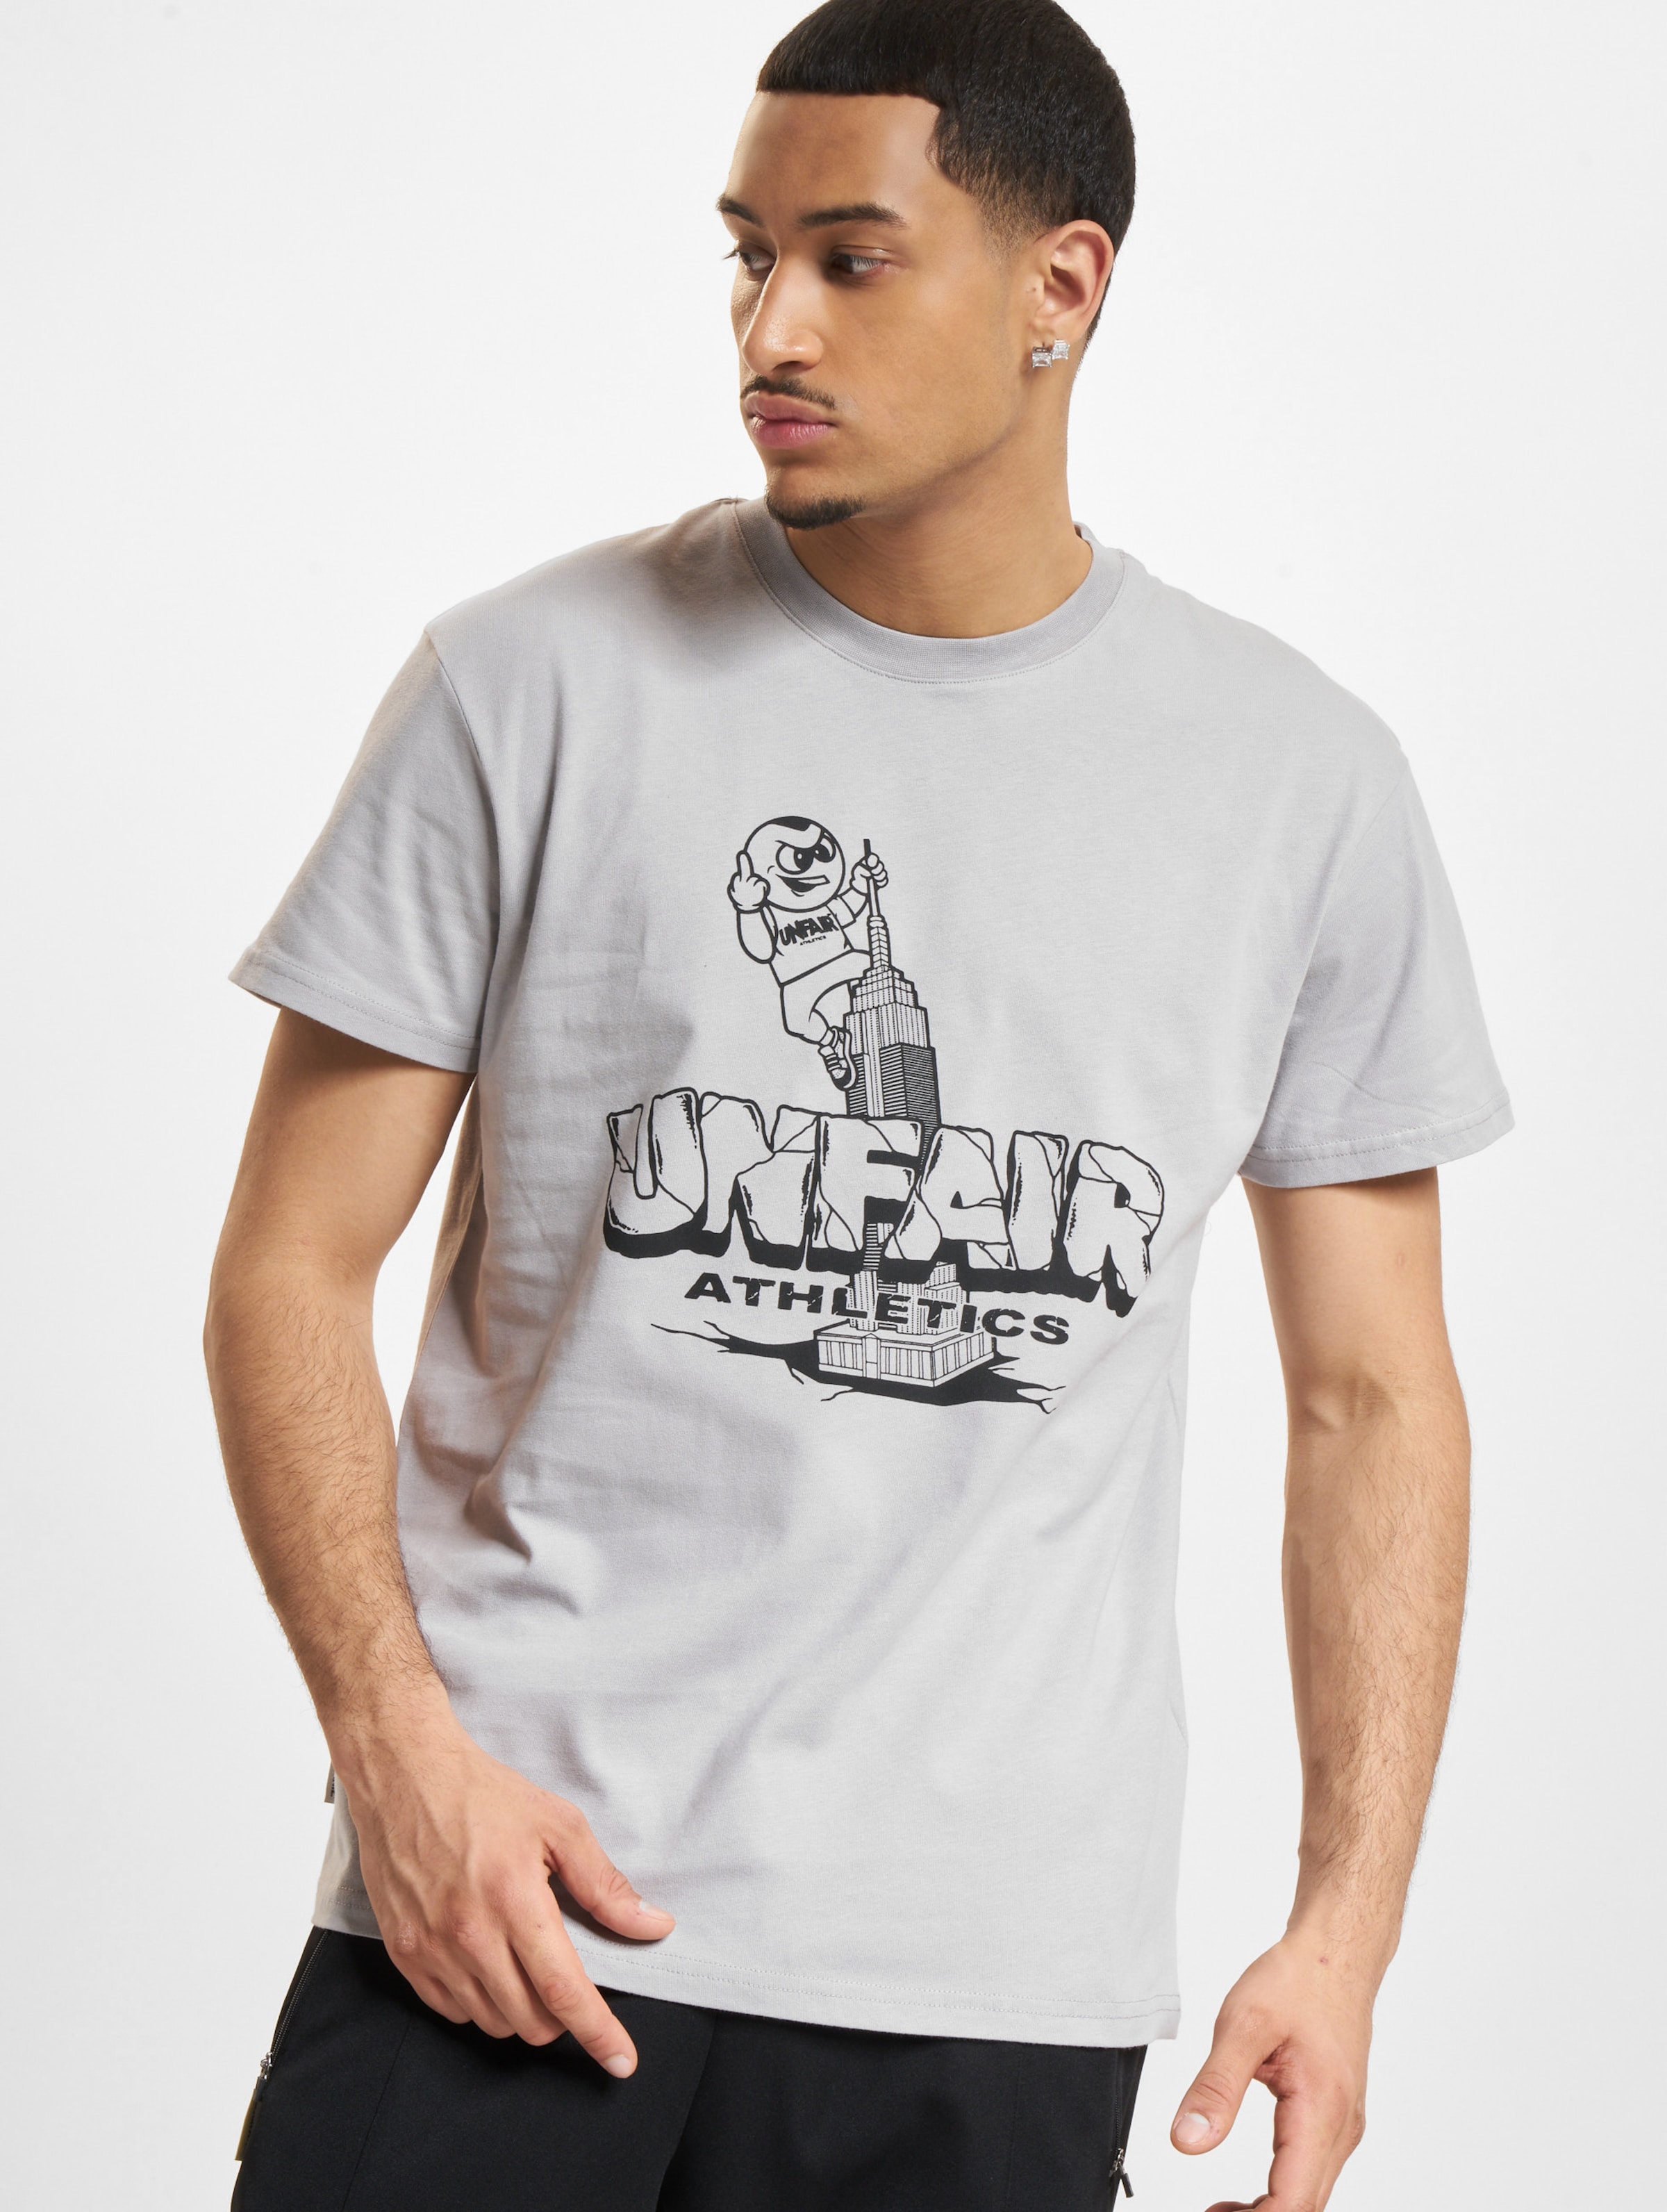 UNFAIR ATHLETICS PB KING T-Shirt Männer,Unisex op kleur grijs, Maat XL